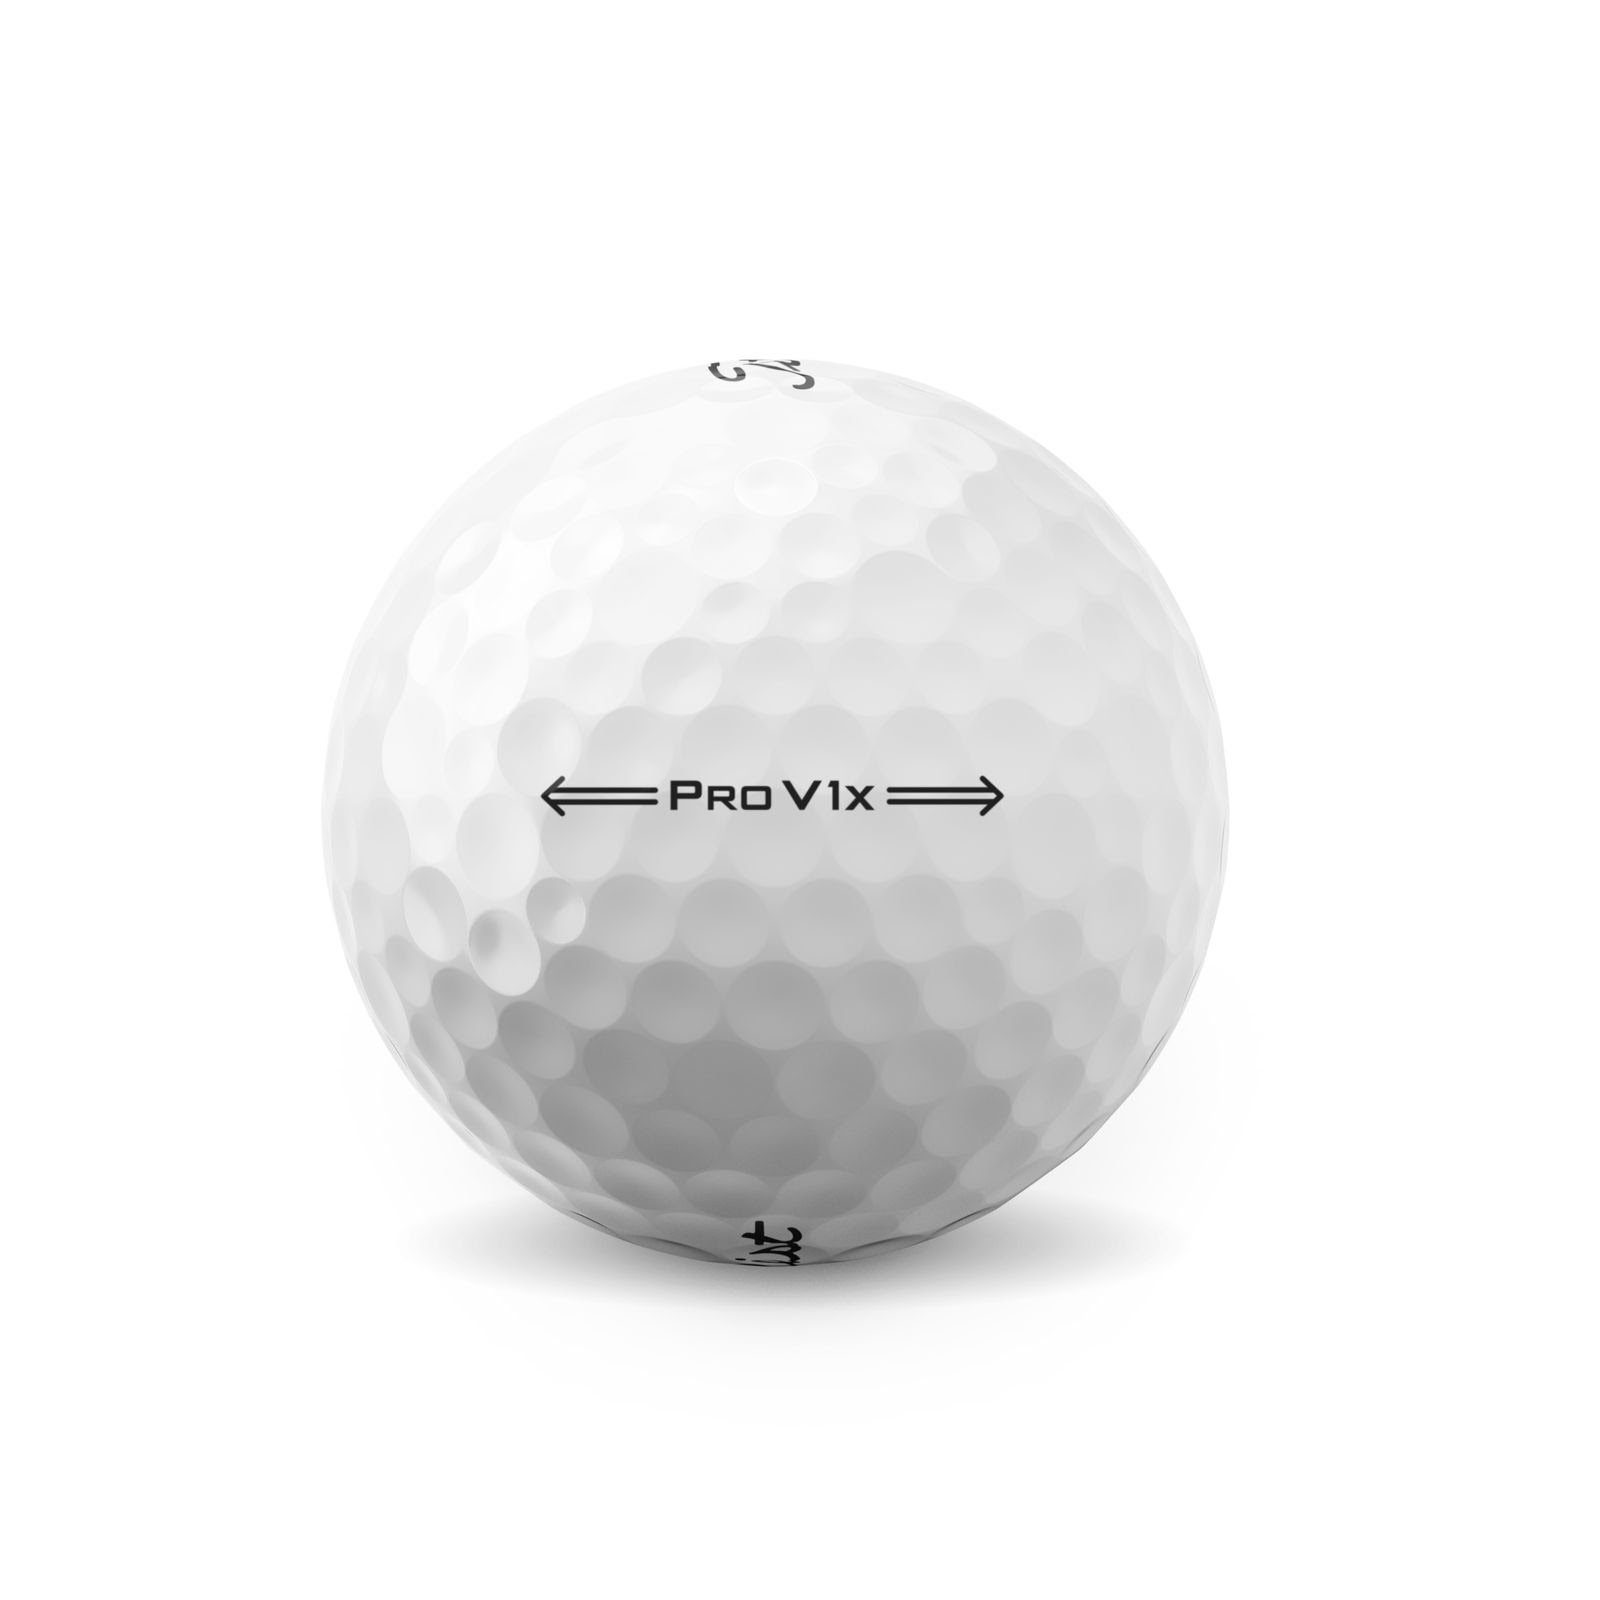 Weiß Spiel Spin Golfbälle Golfball Weichere Stück, Pro Urethan-Elastomer-Schale,High-Flex-Mantelschicht für 3-piece Titleist Titleist im langen 12 wenig gegossene V1x